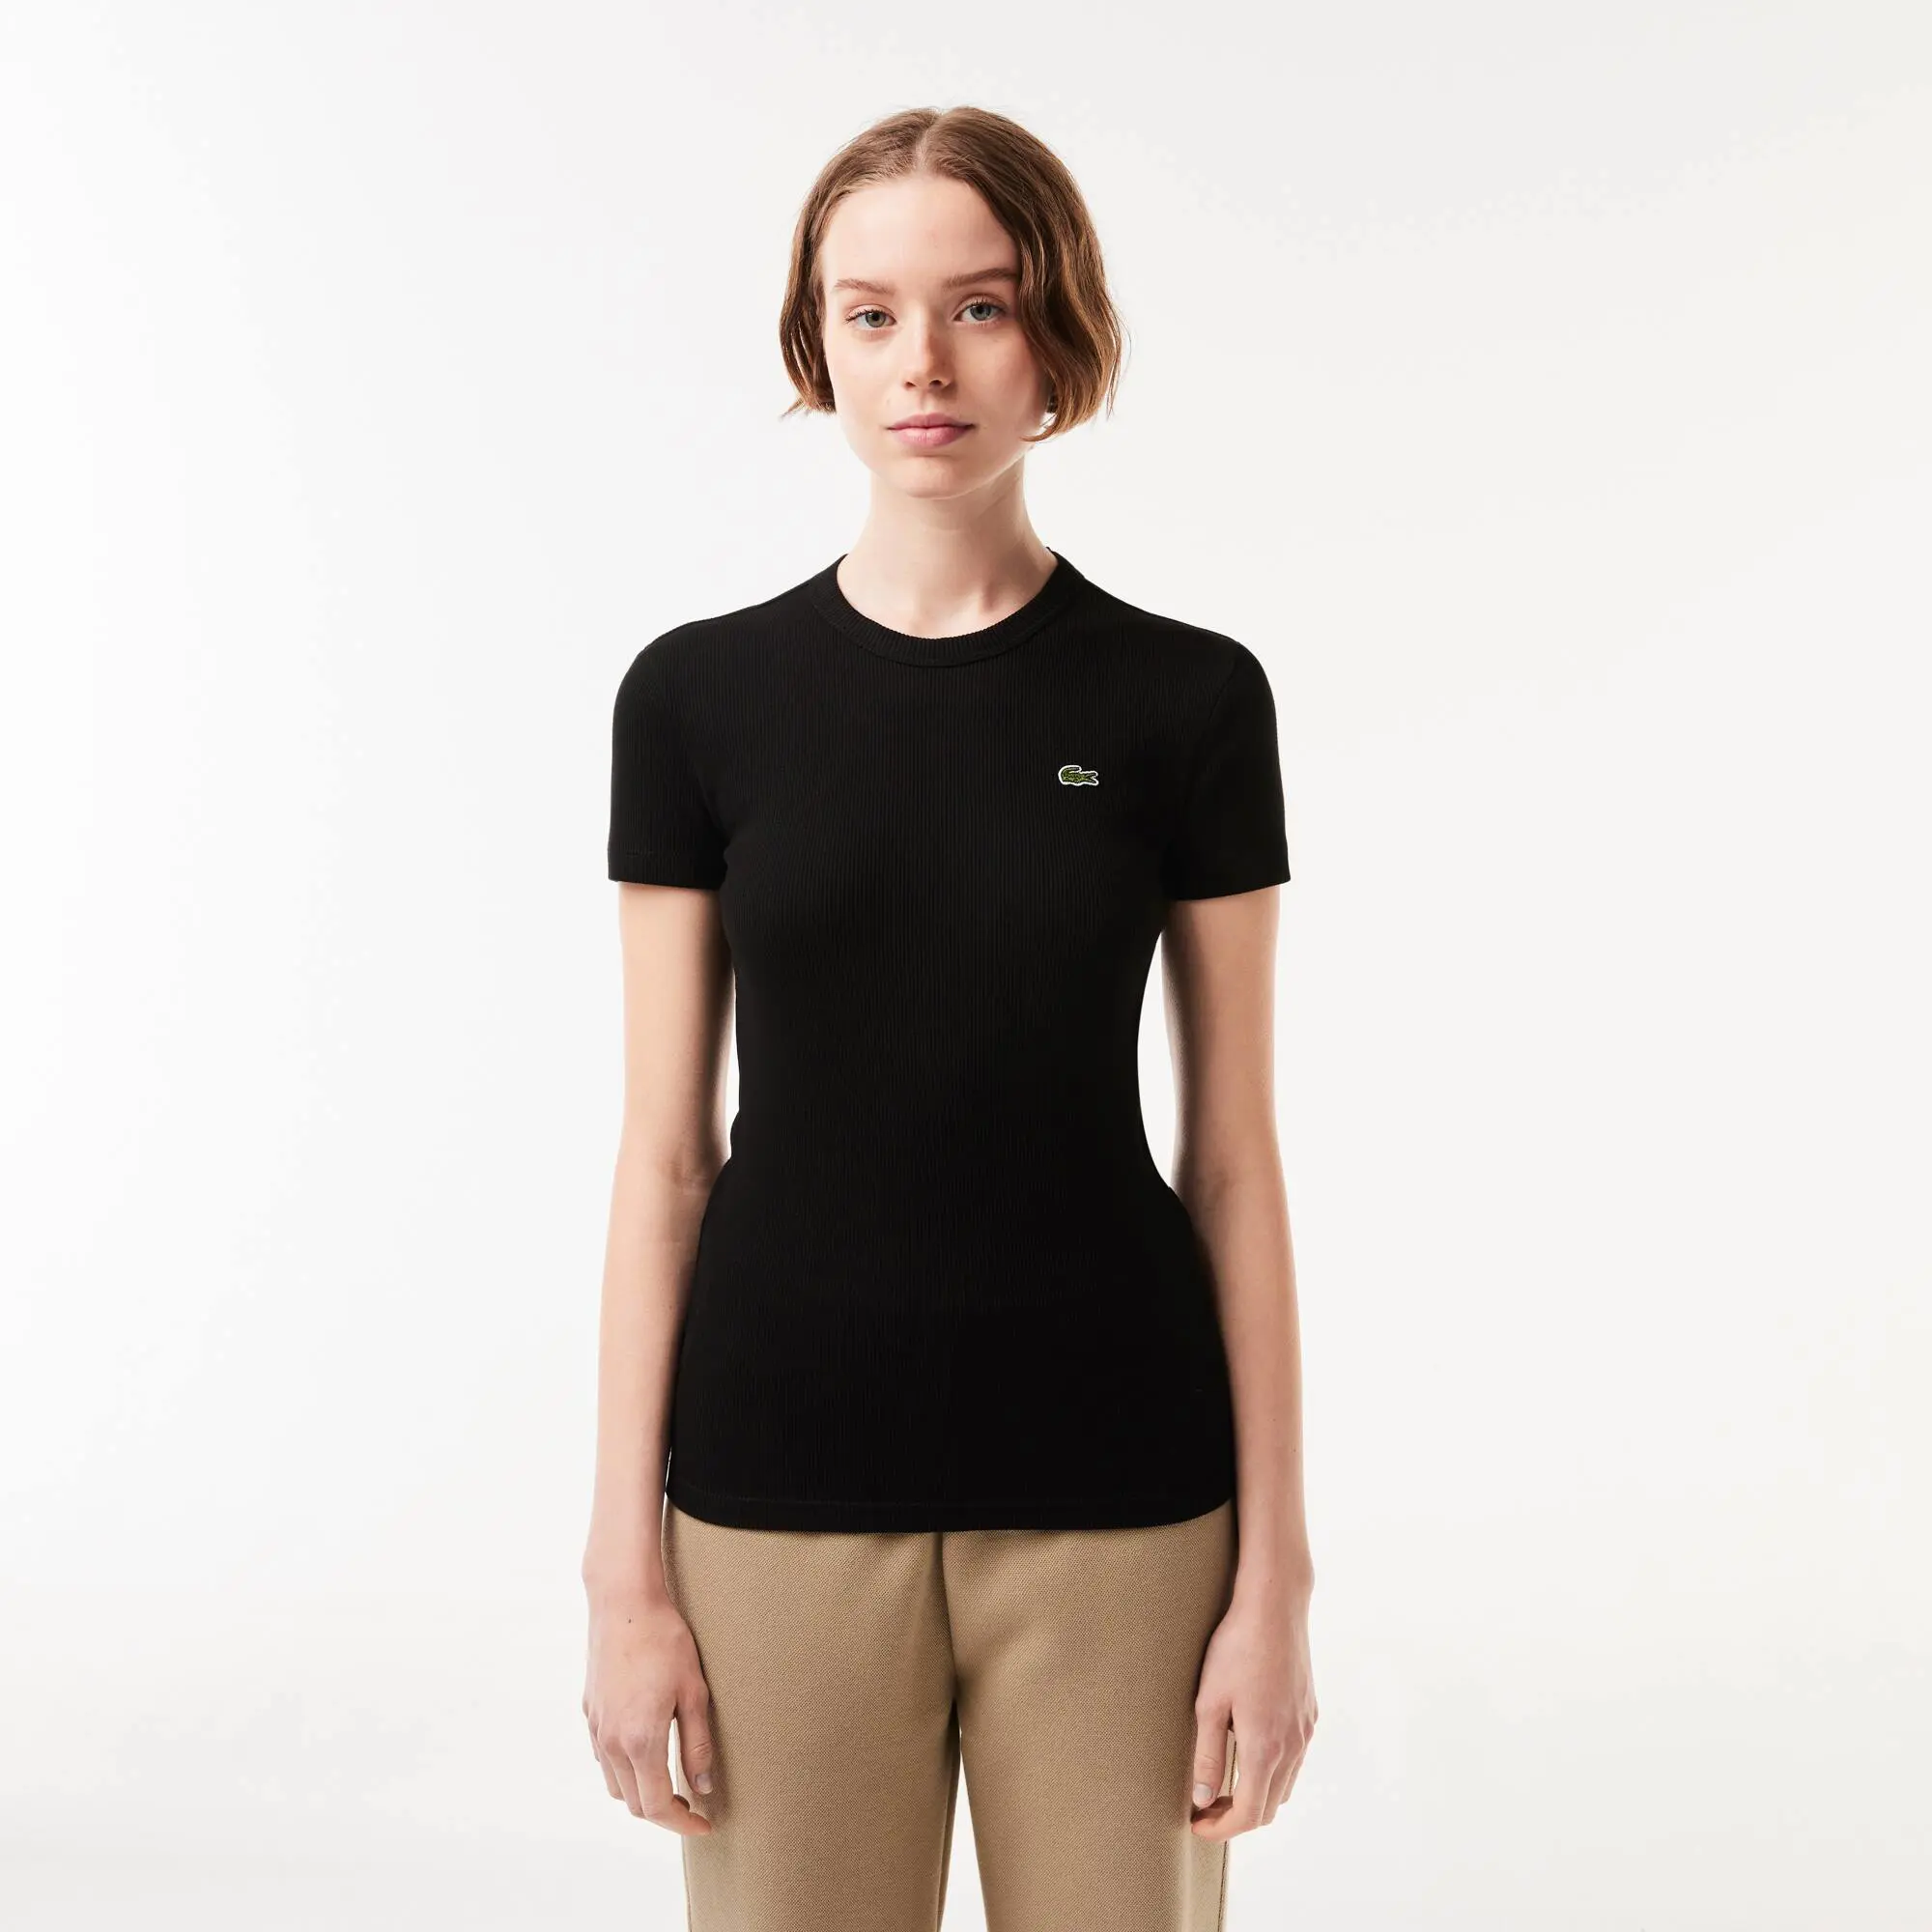 Lacoste T-shirt femme Lacoste slim fit en coton biologique. 1